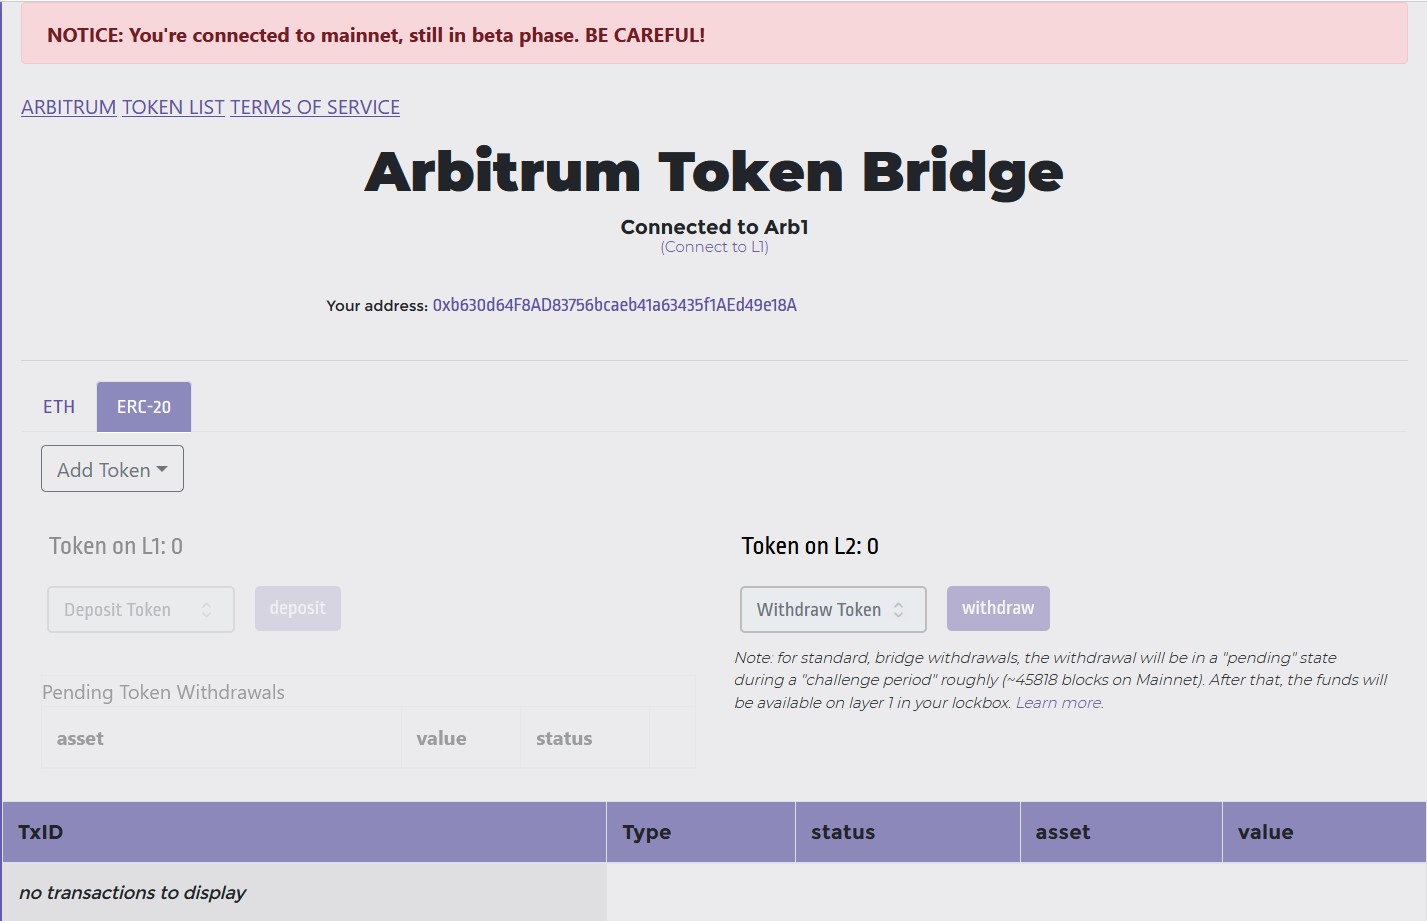 Arbitrum - Deposit Ethereum Based Tokens